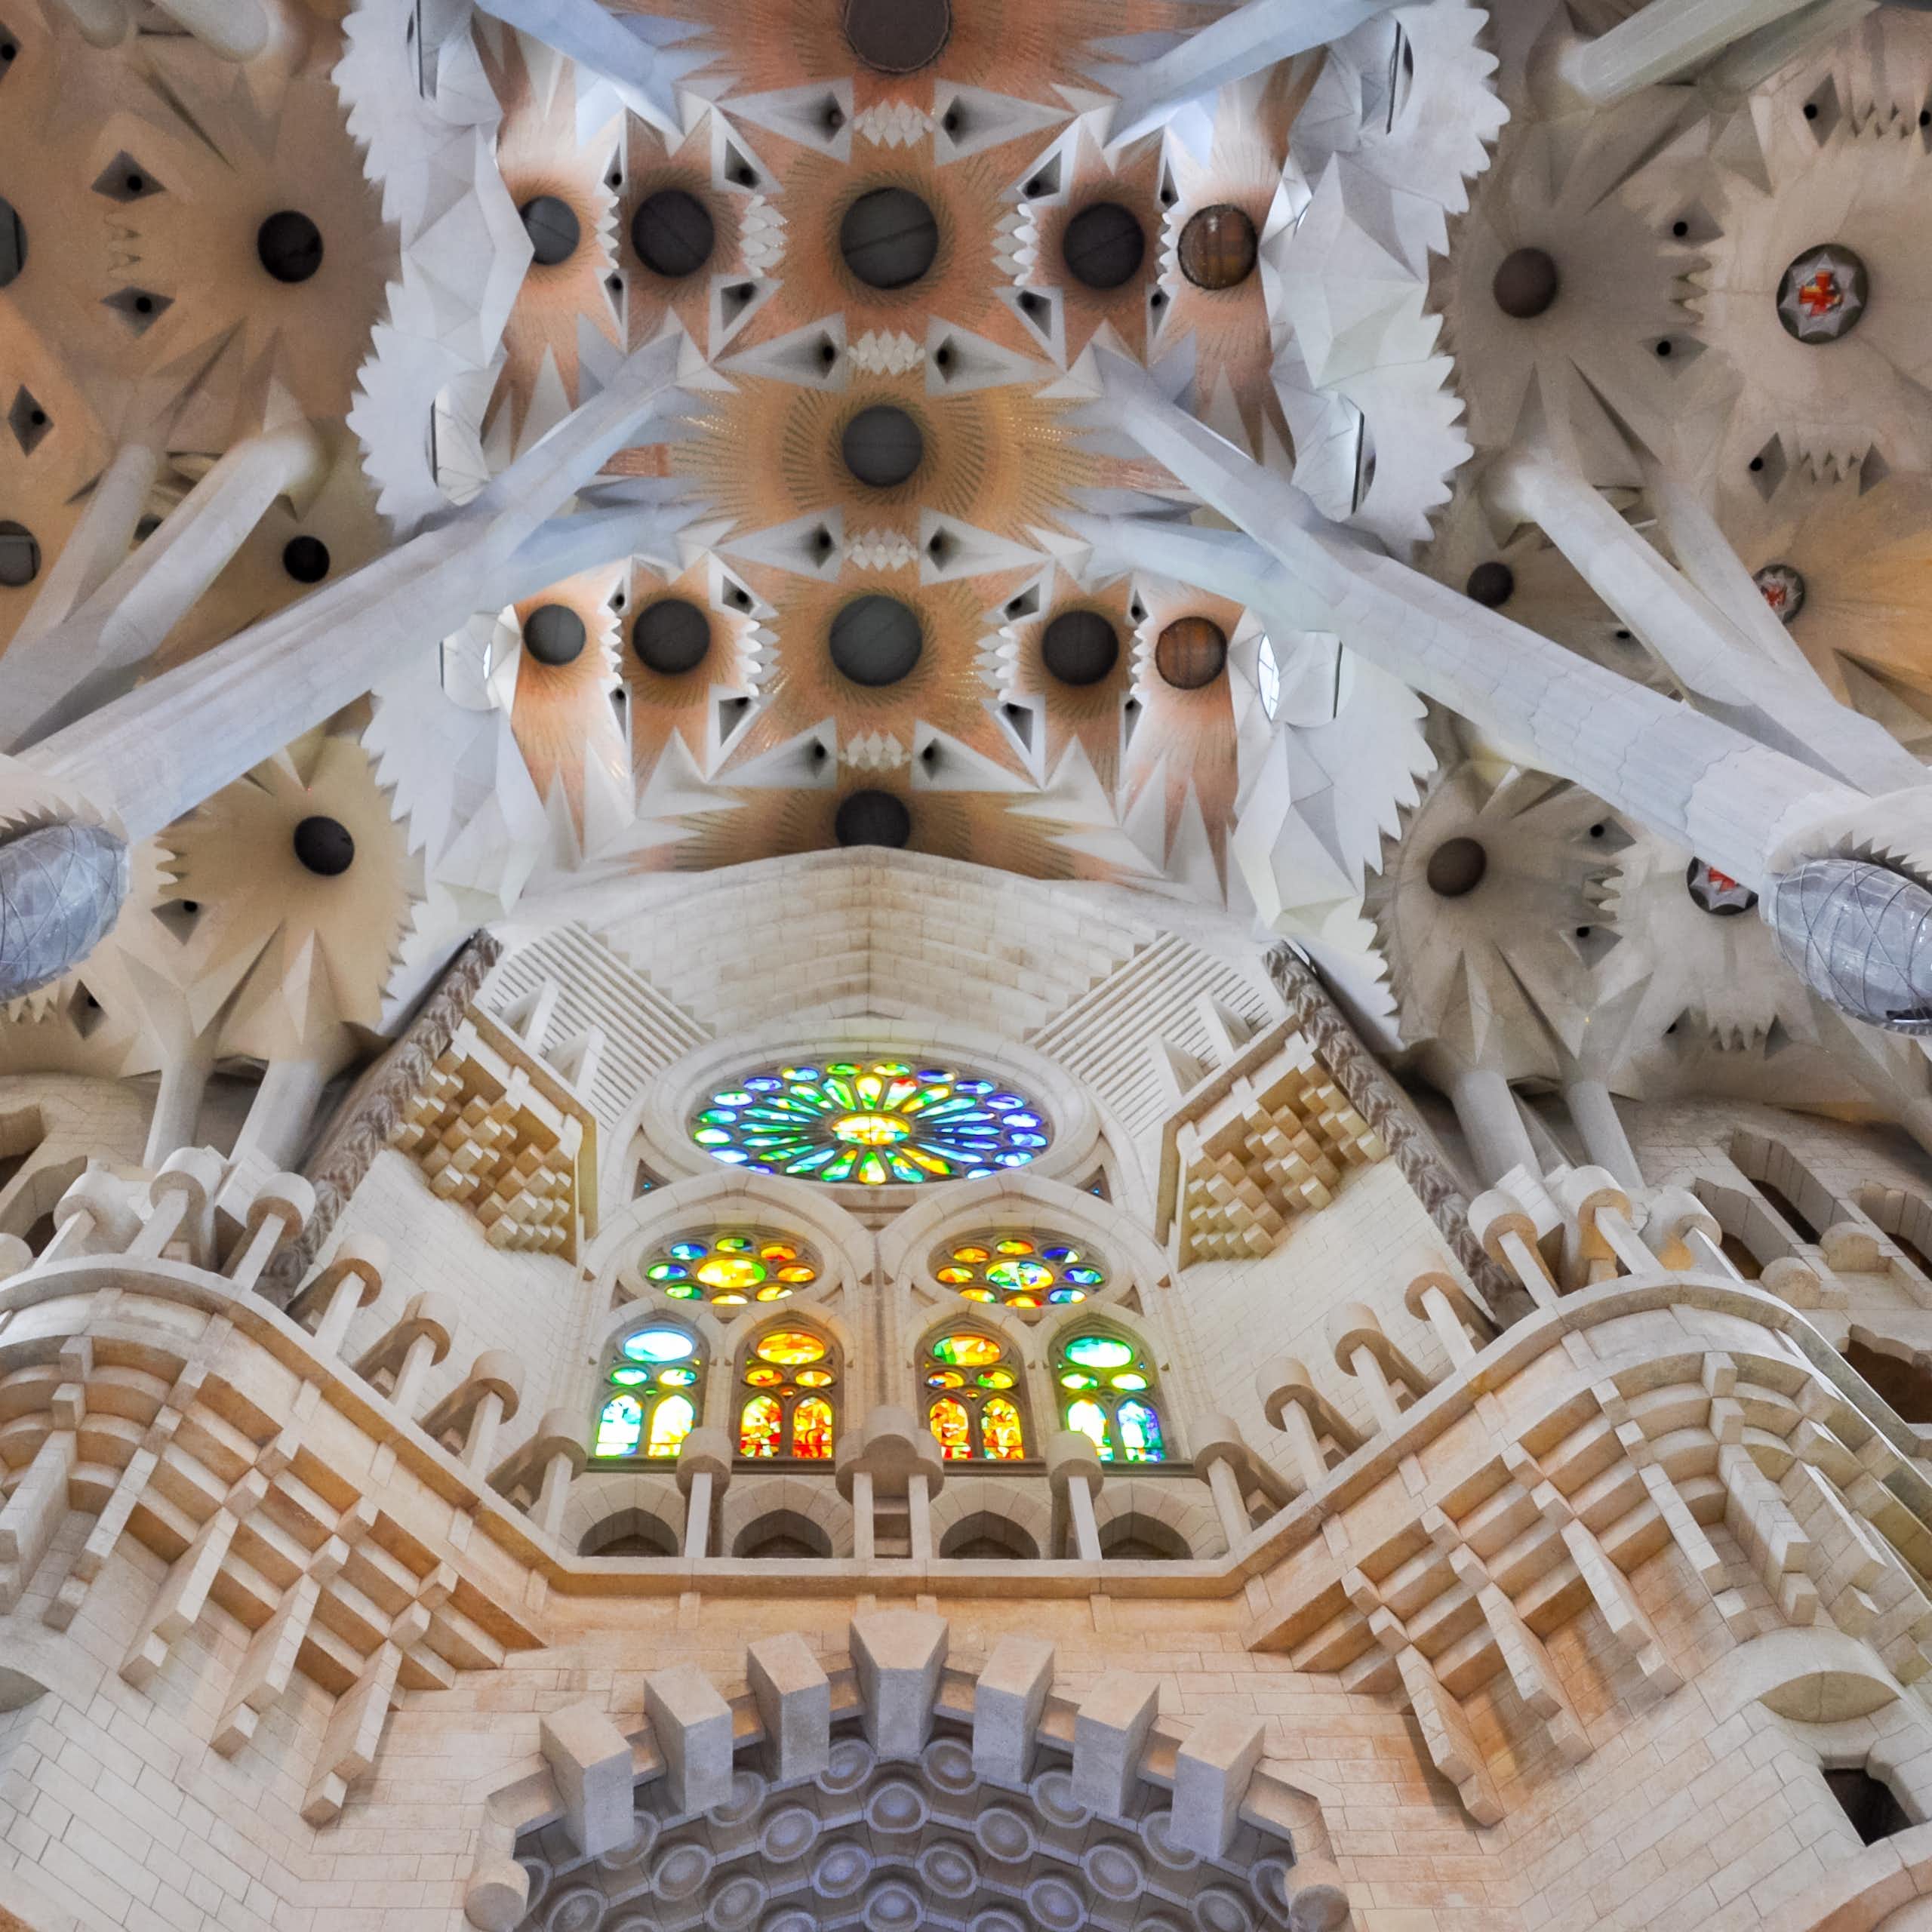 La innovación tecnológica de Antoni Gaudí